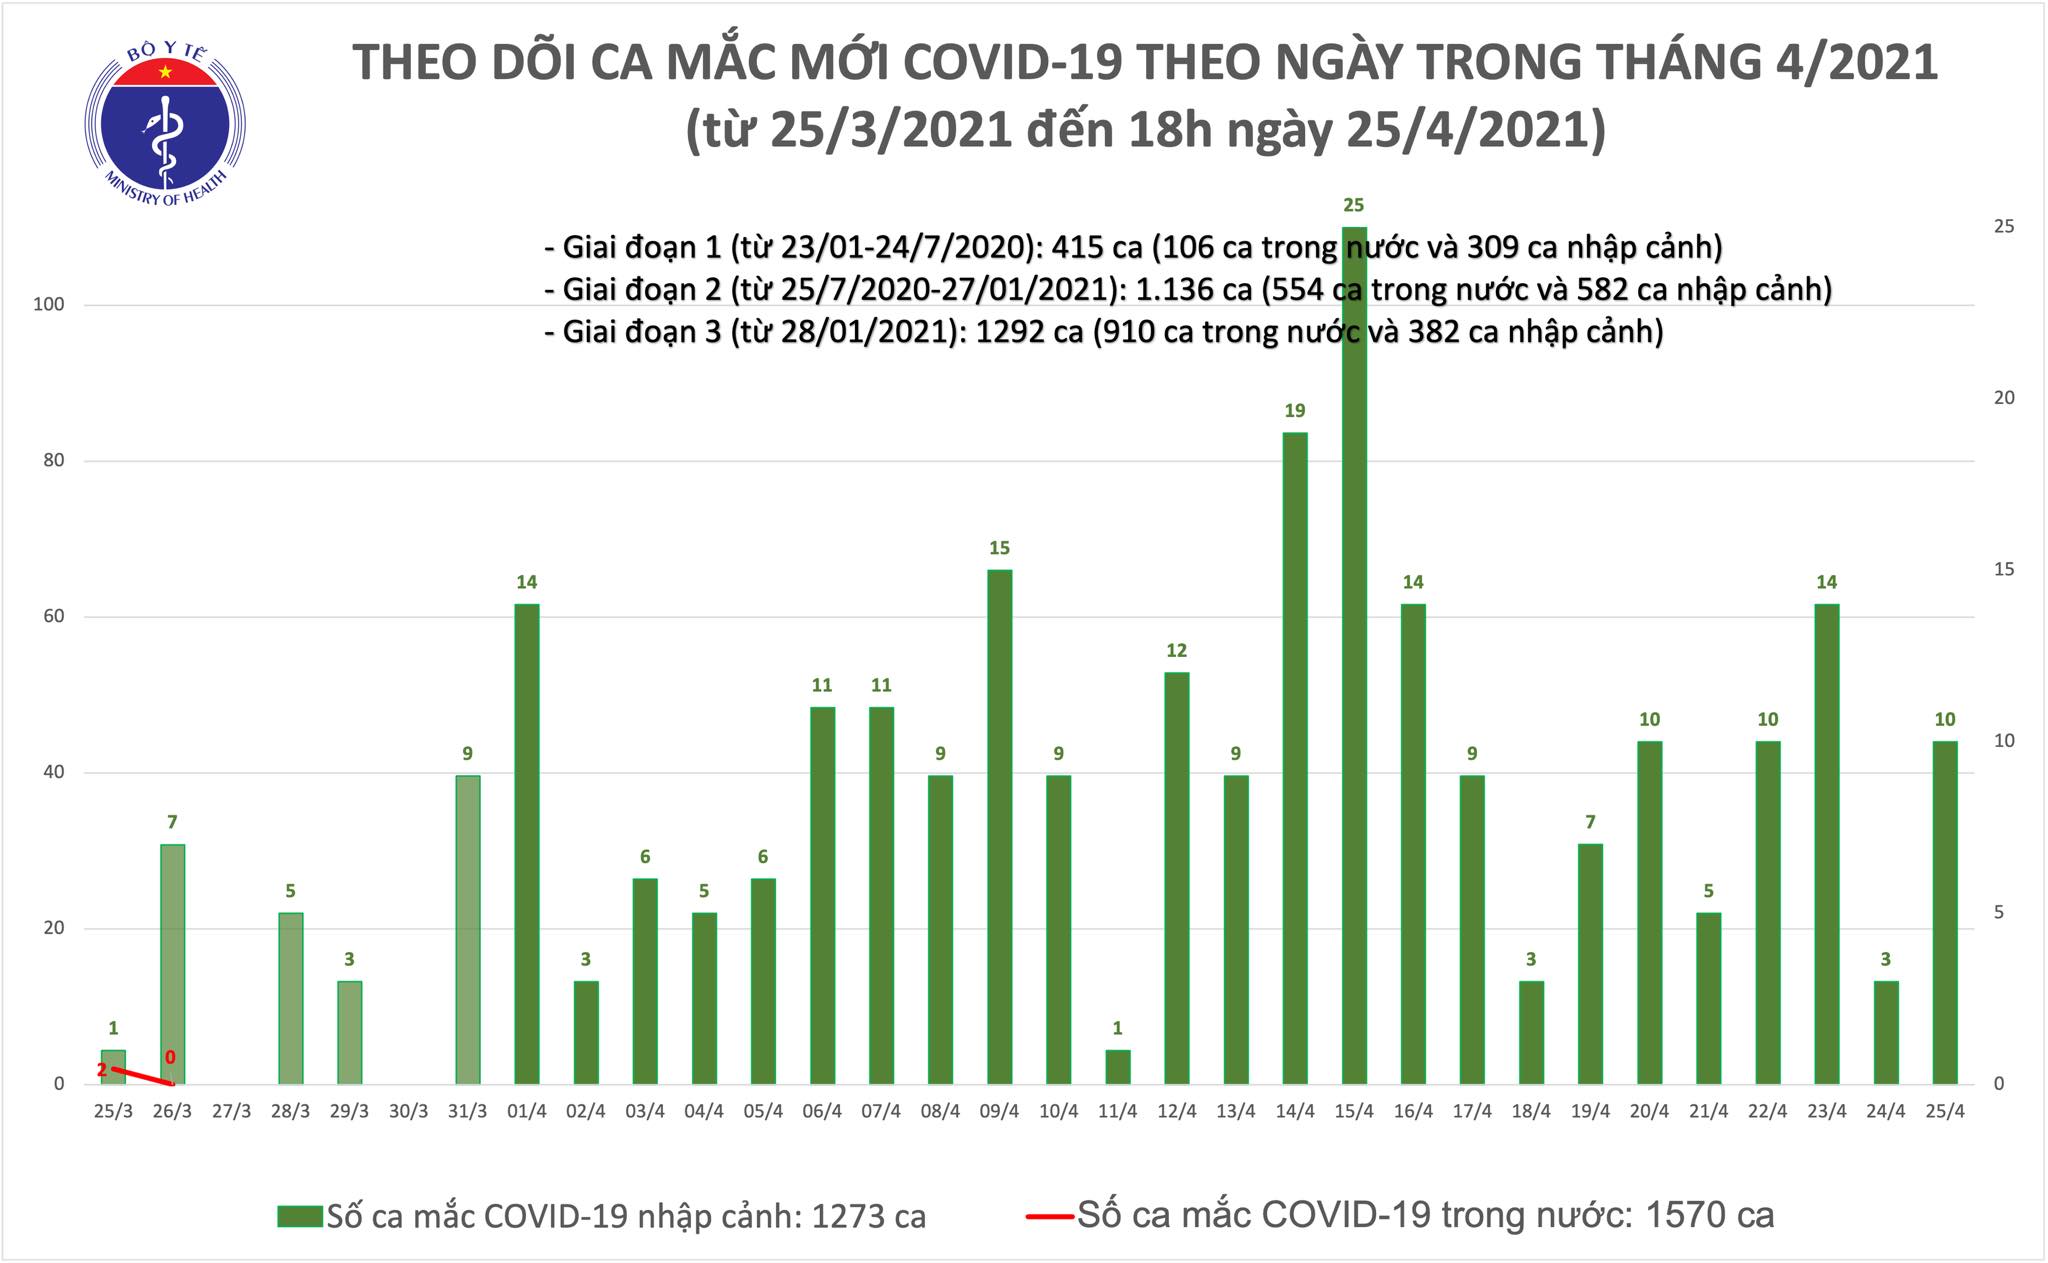 Chiều 25/4: Việt Nam thêm 10 ca mắc COVID-19, thế giới đã có trên 147 triệu ca - Ảnh 1.